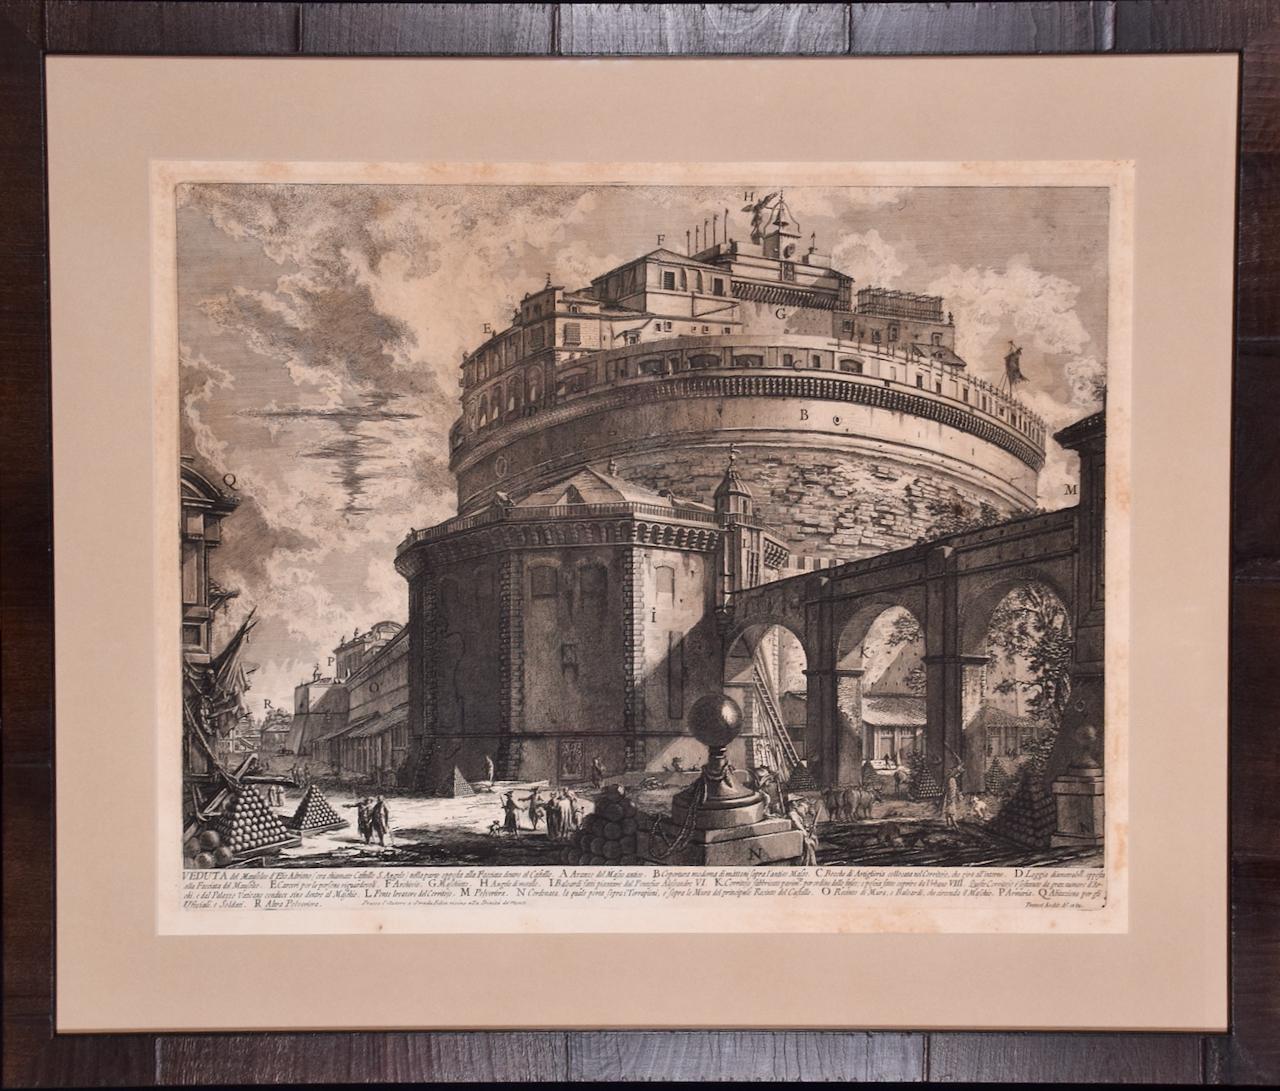 Mausole de Hadrian, Castel S. Angelo : eau-forte encadrée du 18ème siècle par Piranesi